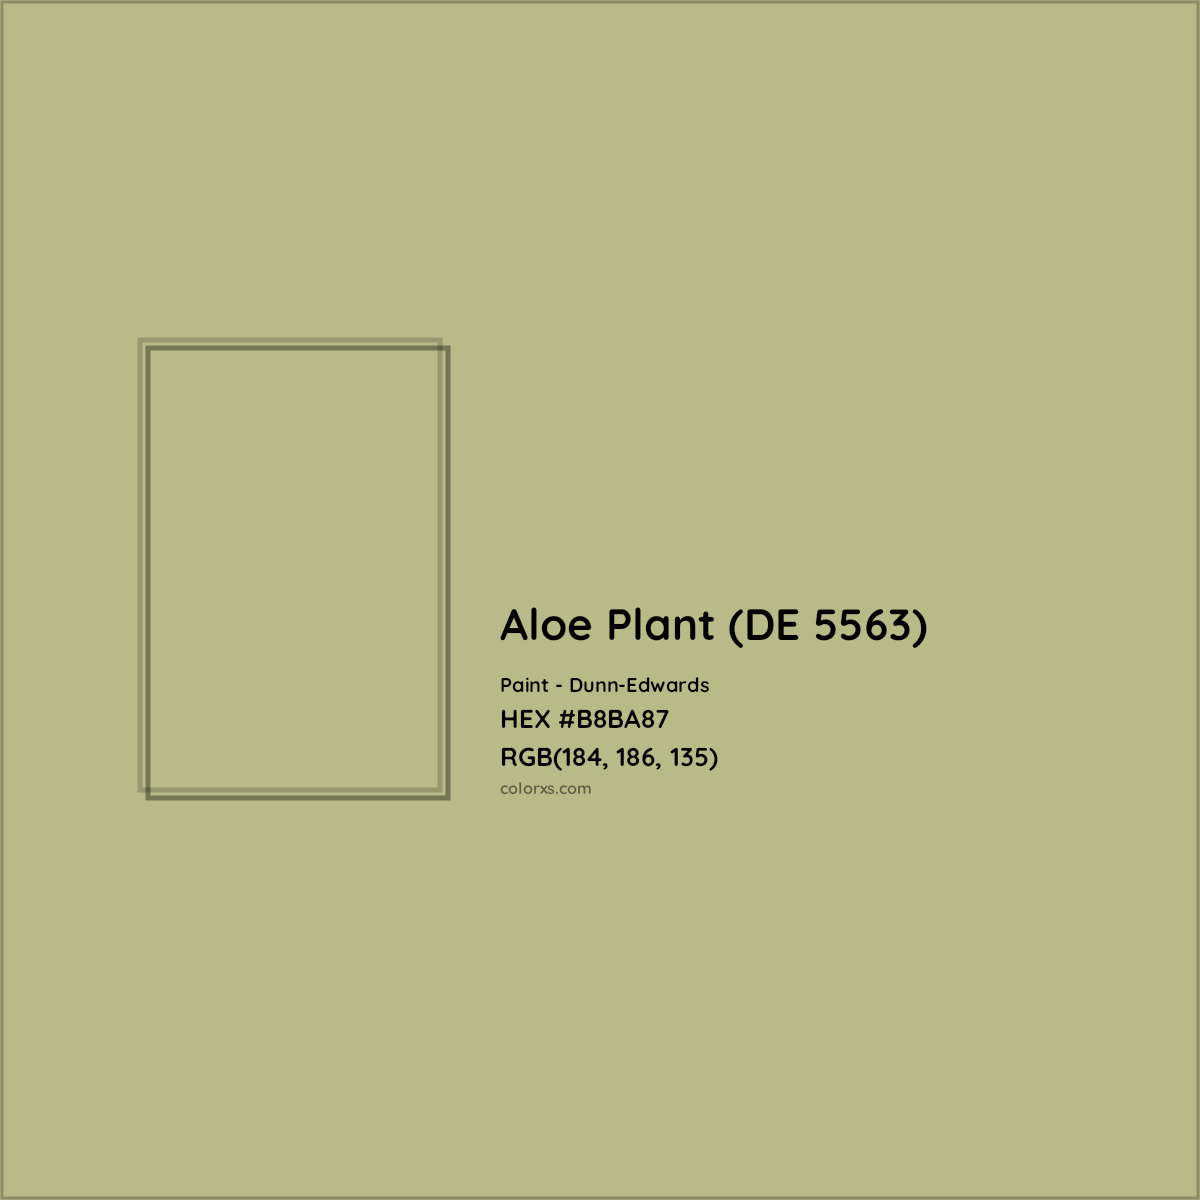 HEX #B8BA87 Aloe Plant (DE 5563) Paint Dunn-Edwards - Color Code